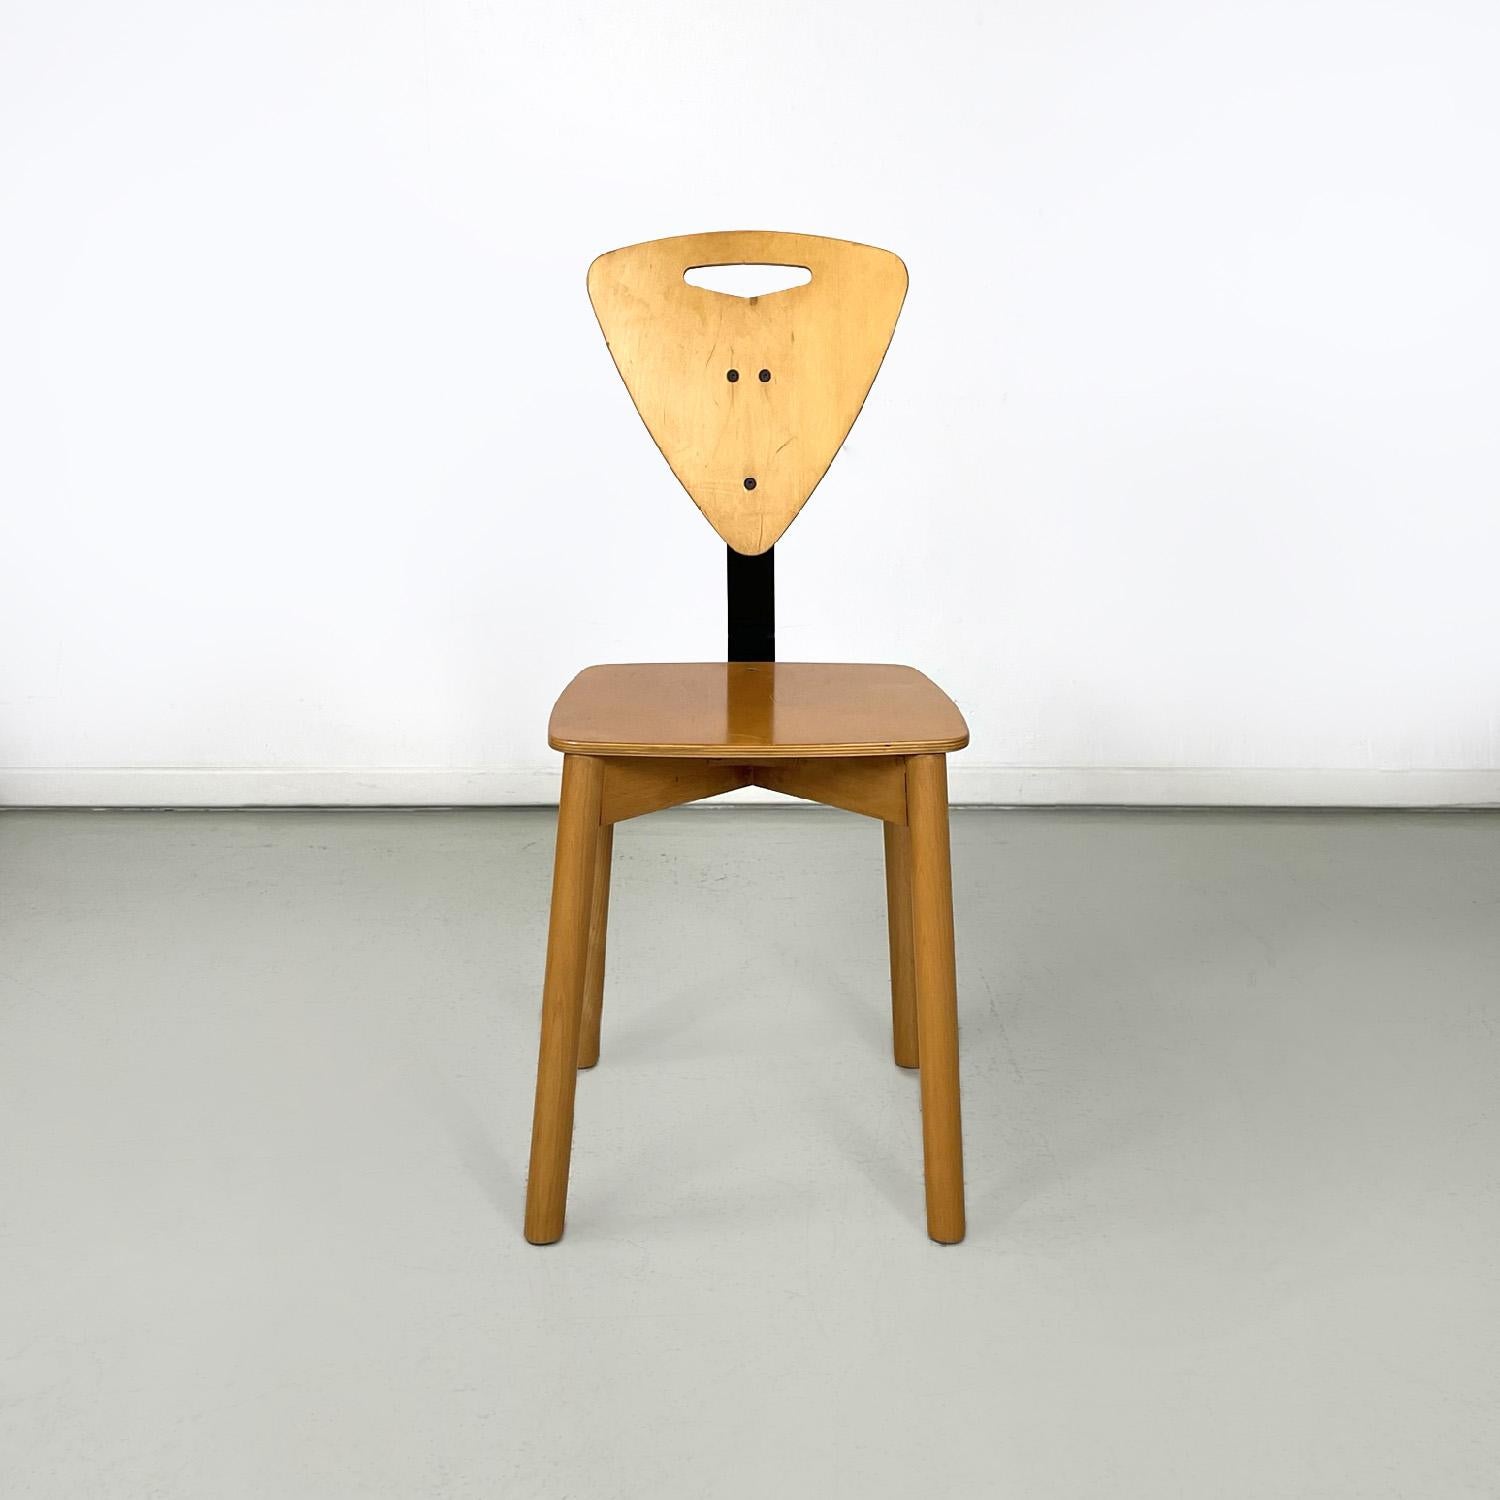 Chaises italiennes modernes en bois clair avec barres métalliques noires, années 1980
Ensemble de six chaises en bois. L'assise est de forme carrée avec des angles arrondis ; le dossier triangulaire avec un trou allongé est relié à l'assise par une